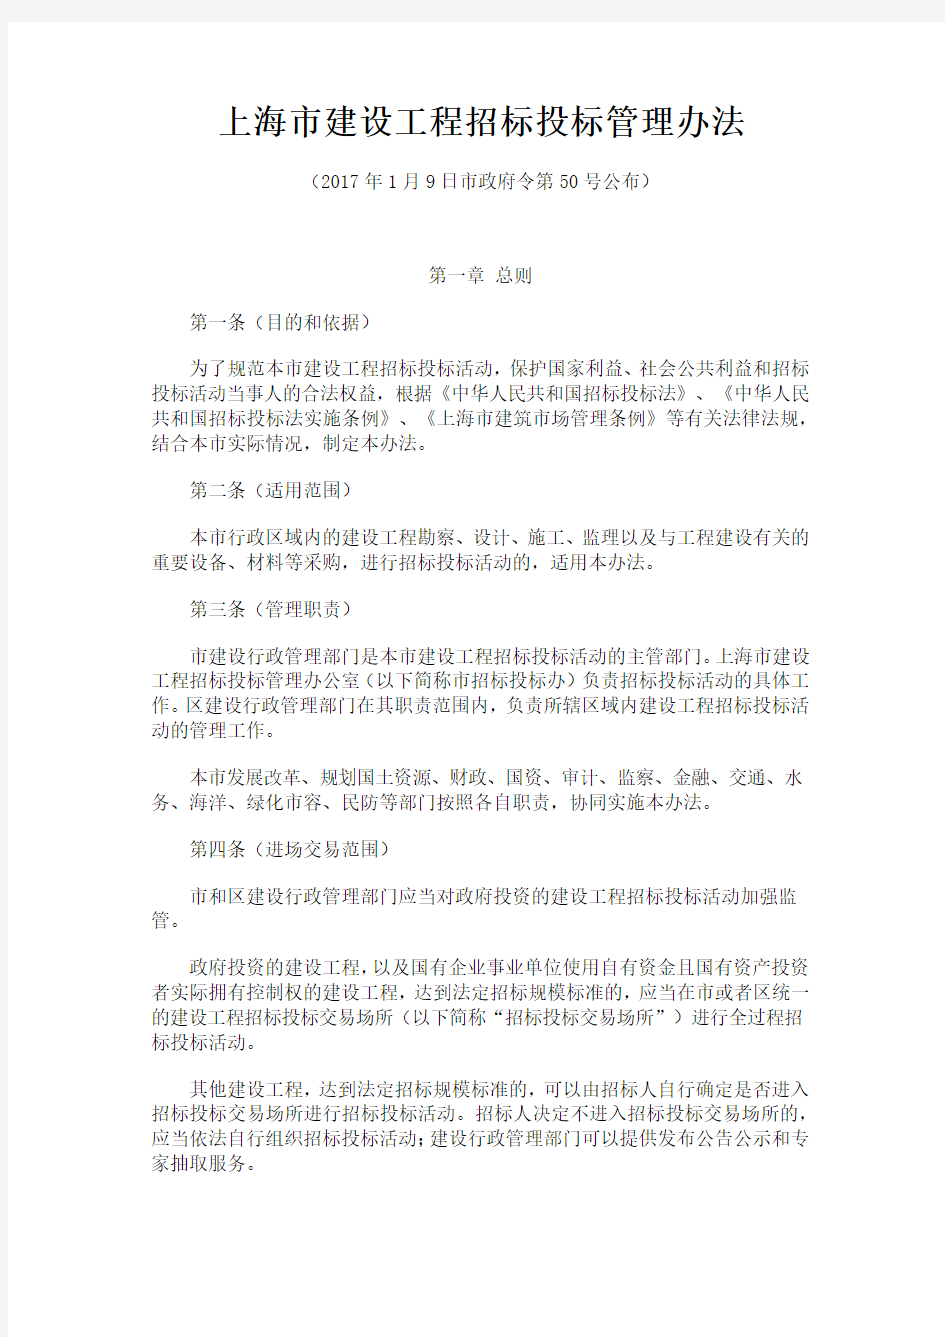 上海市建设工程招标投标管理办法(沪府令第50号)